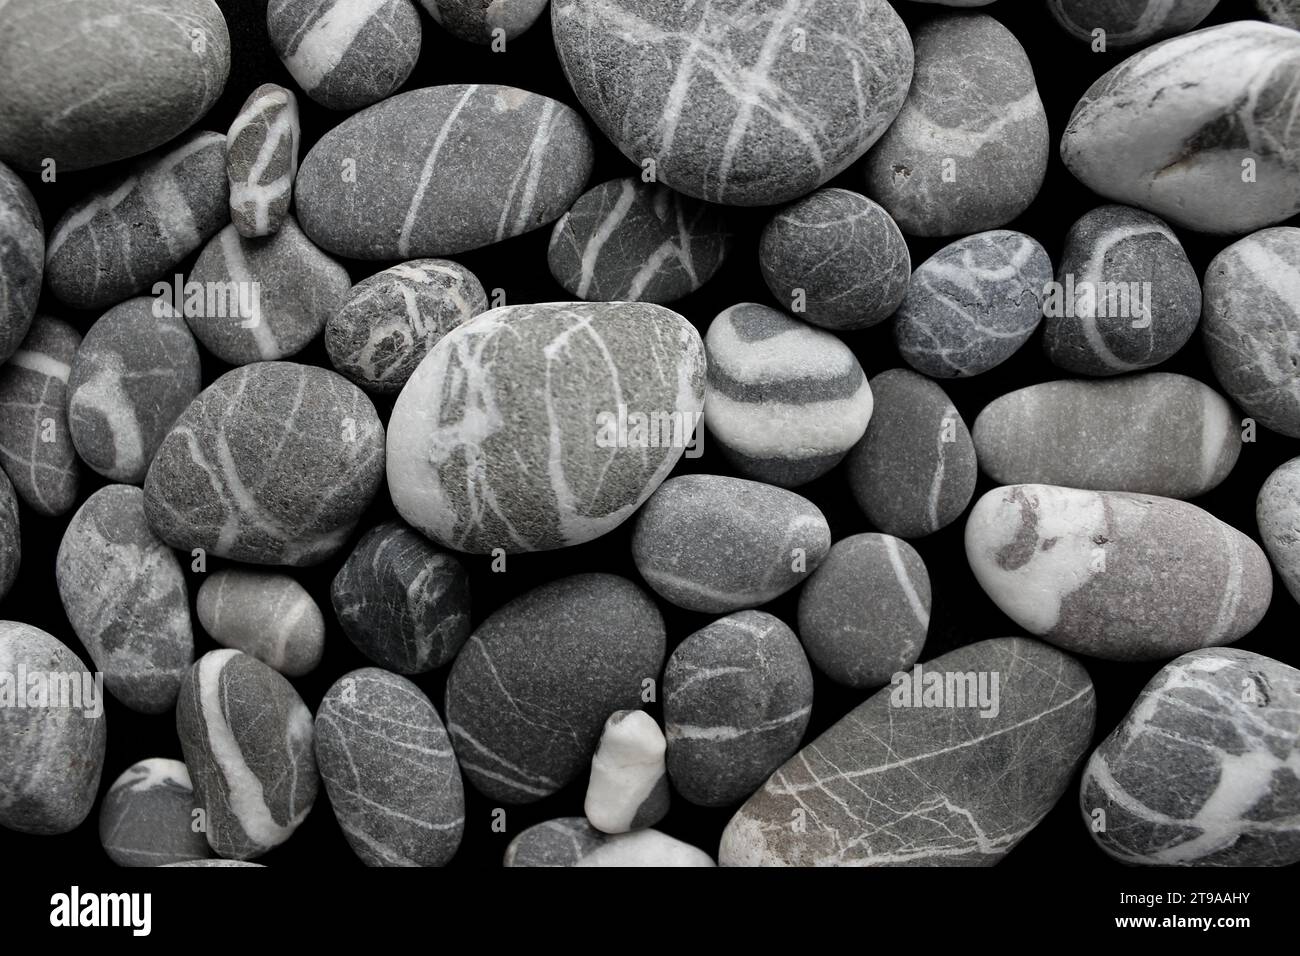 Motif de pierres de mer grises de forme différente avec des stries de quartz blanc angle vue photo stock Banque D'Images